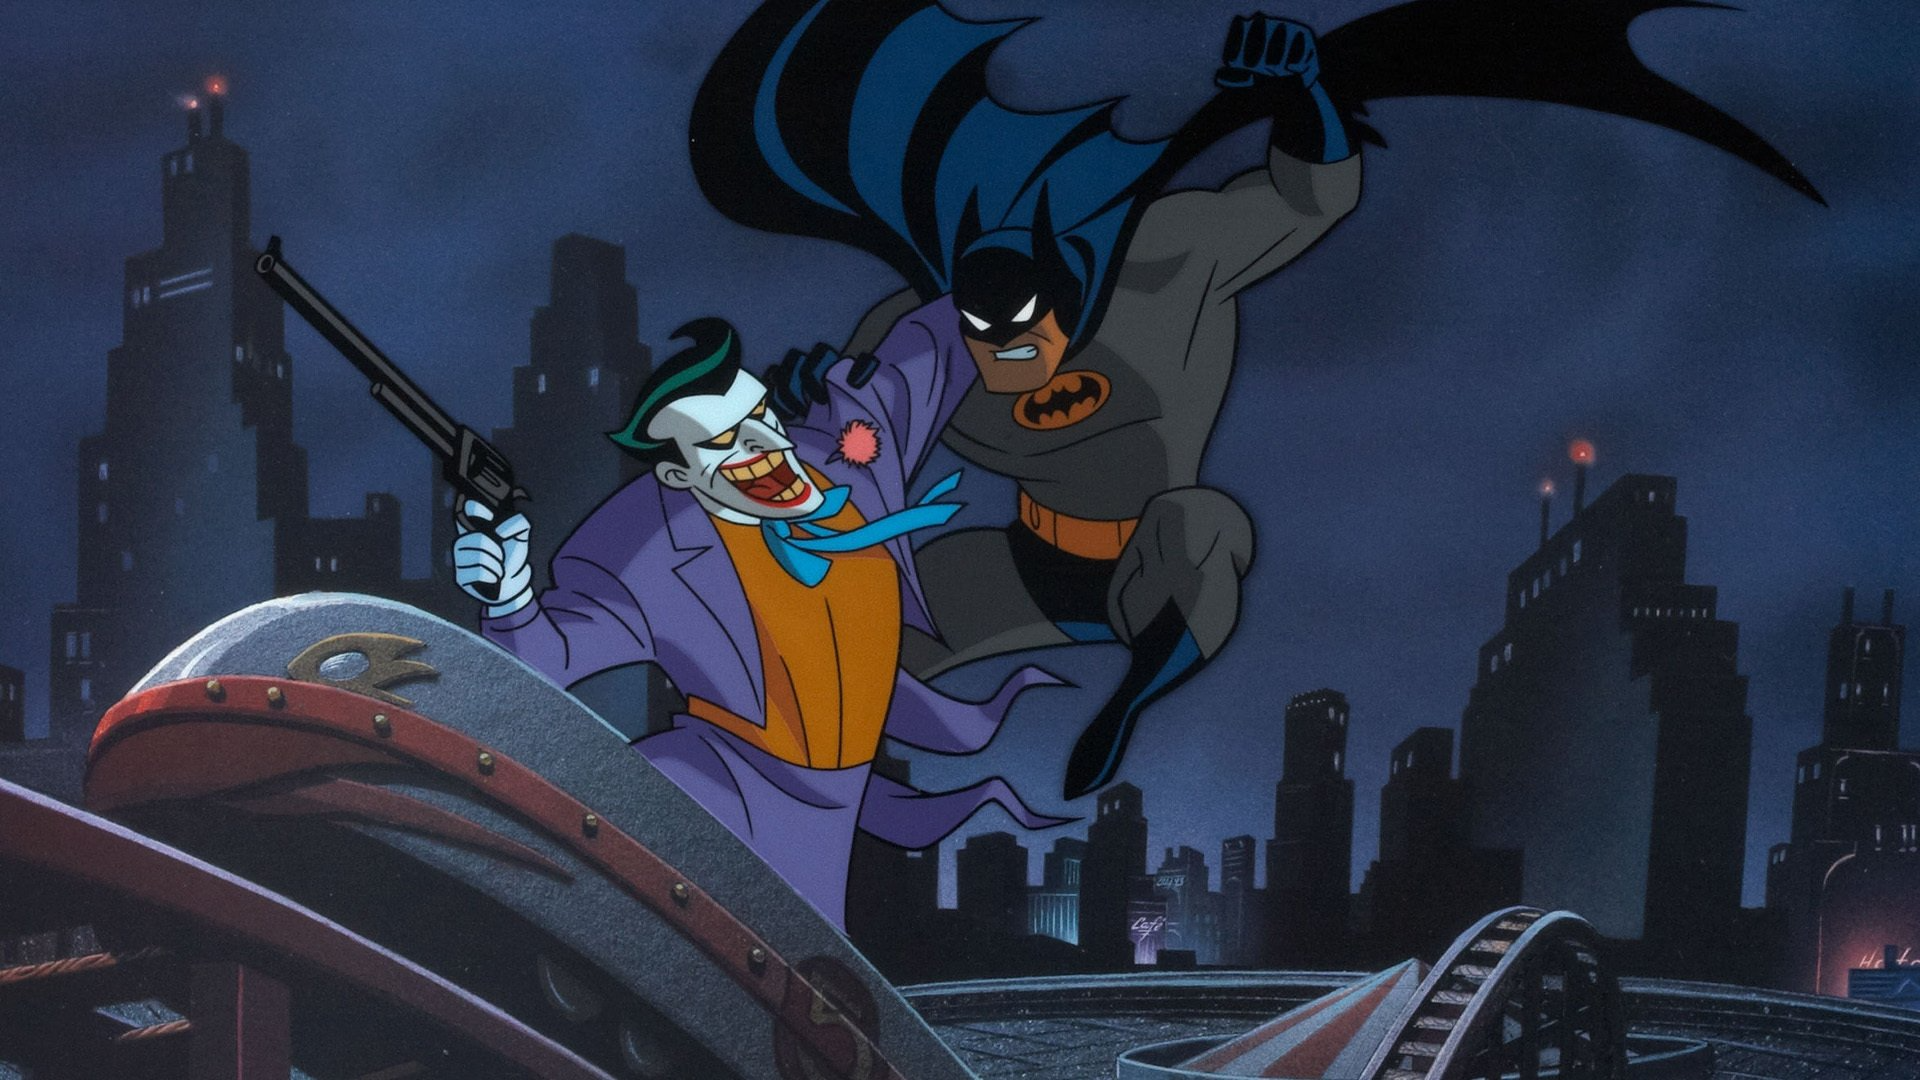 Batman, la série animée